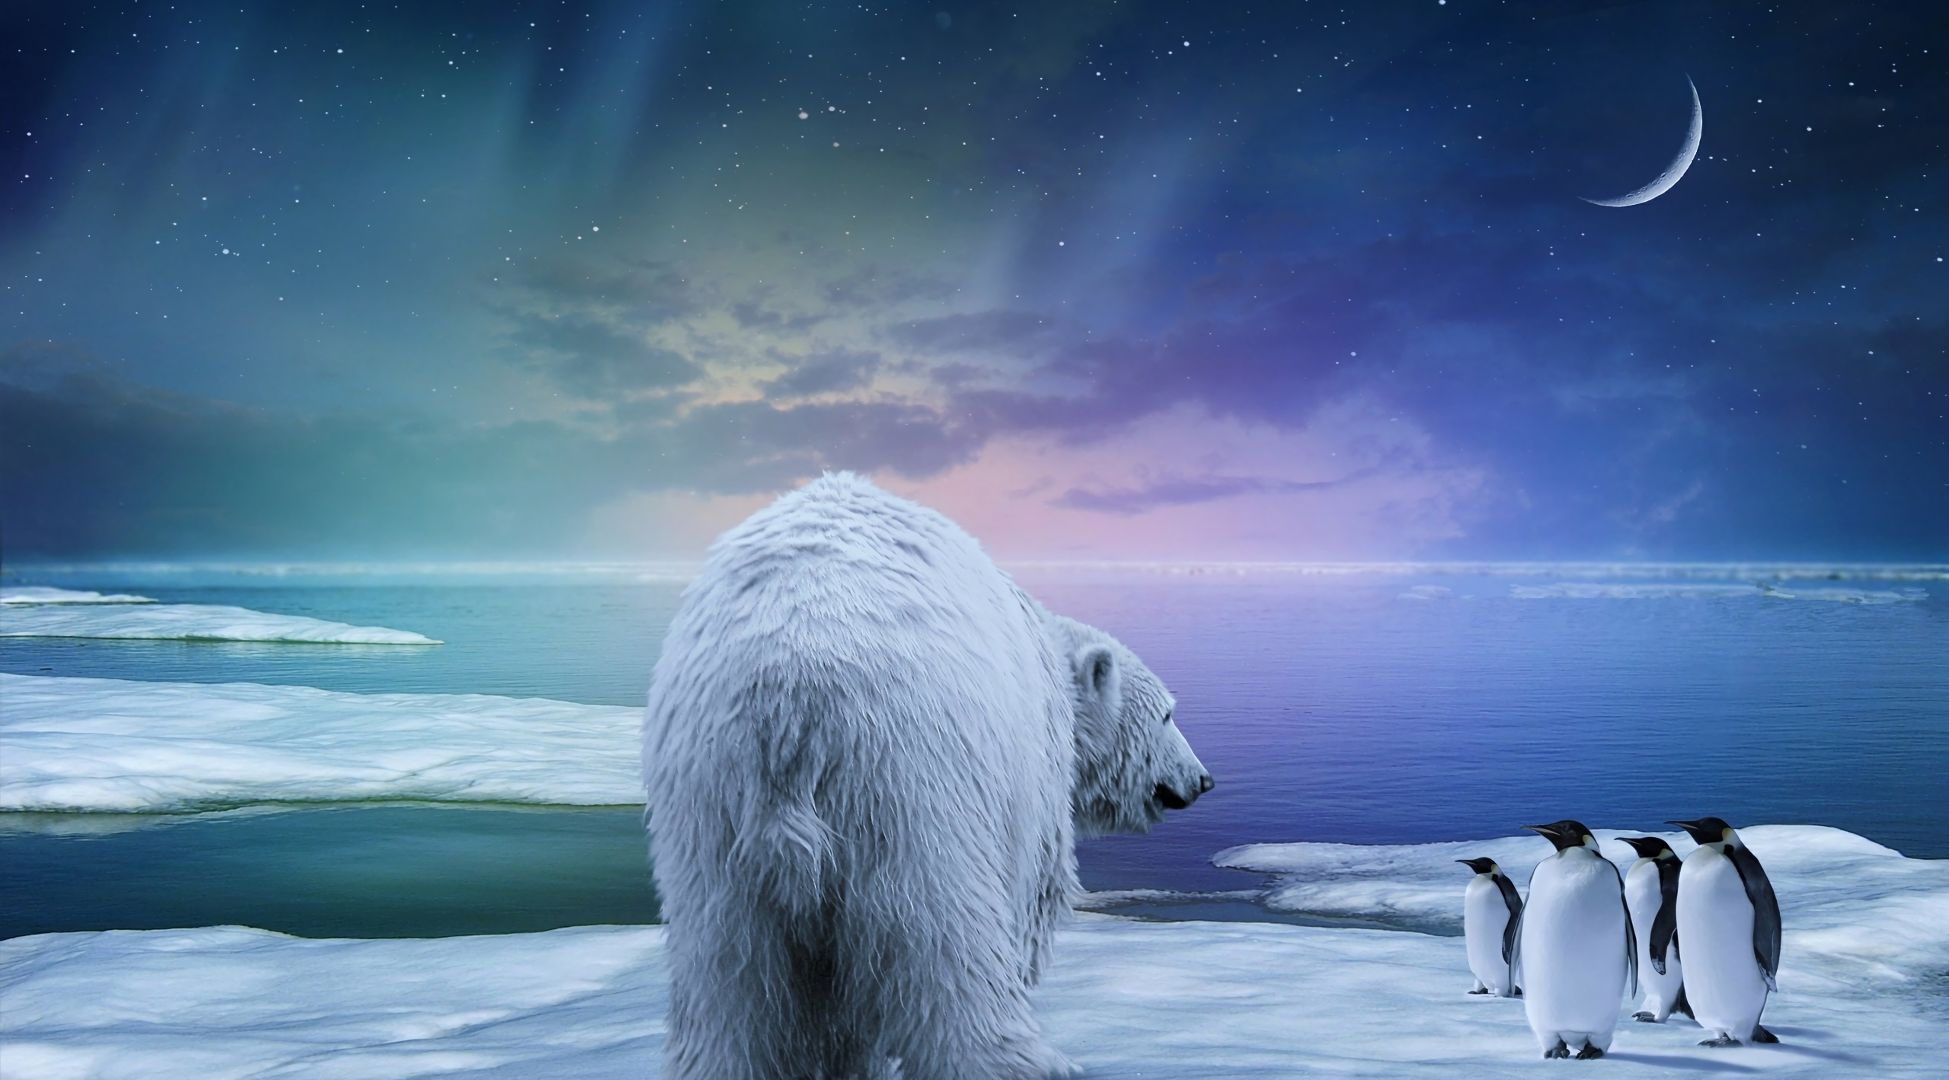 Скачать обои бесплатно Зима, Небо, Звезды, Луна, Снег, Медведь, Фантазия, Пингвин, Белый Медведь, Художественные картинка на рабочий стол ПК